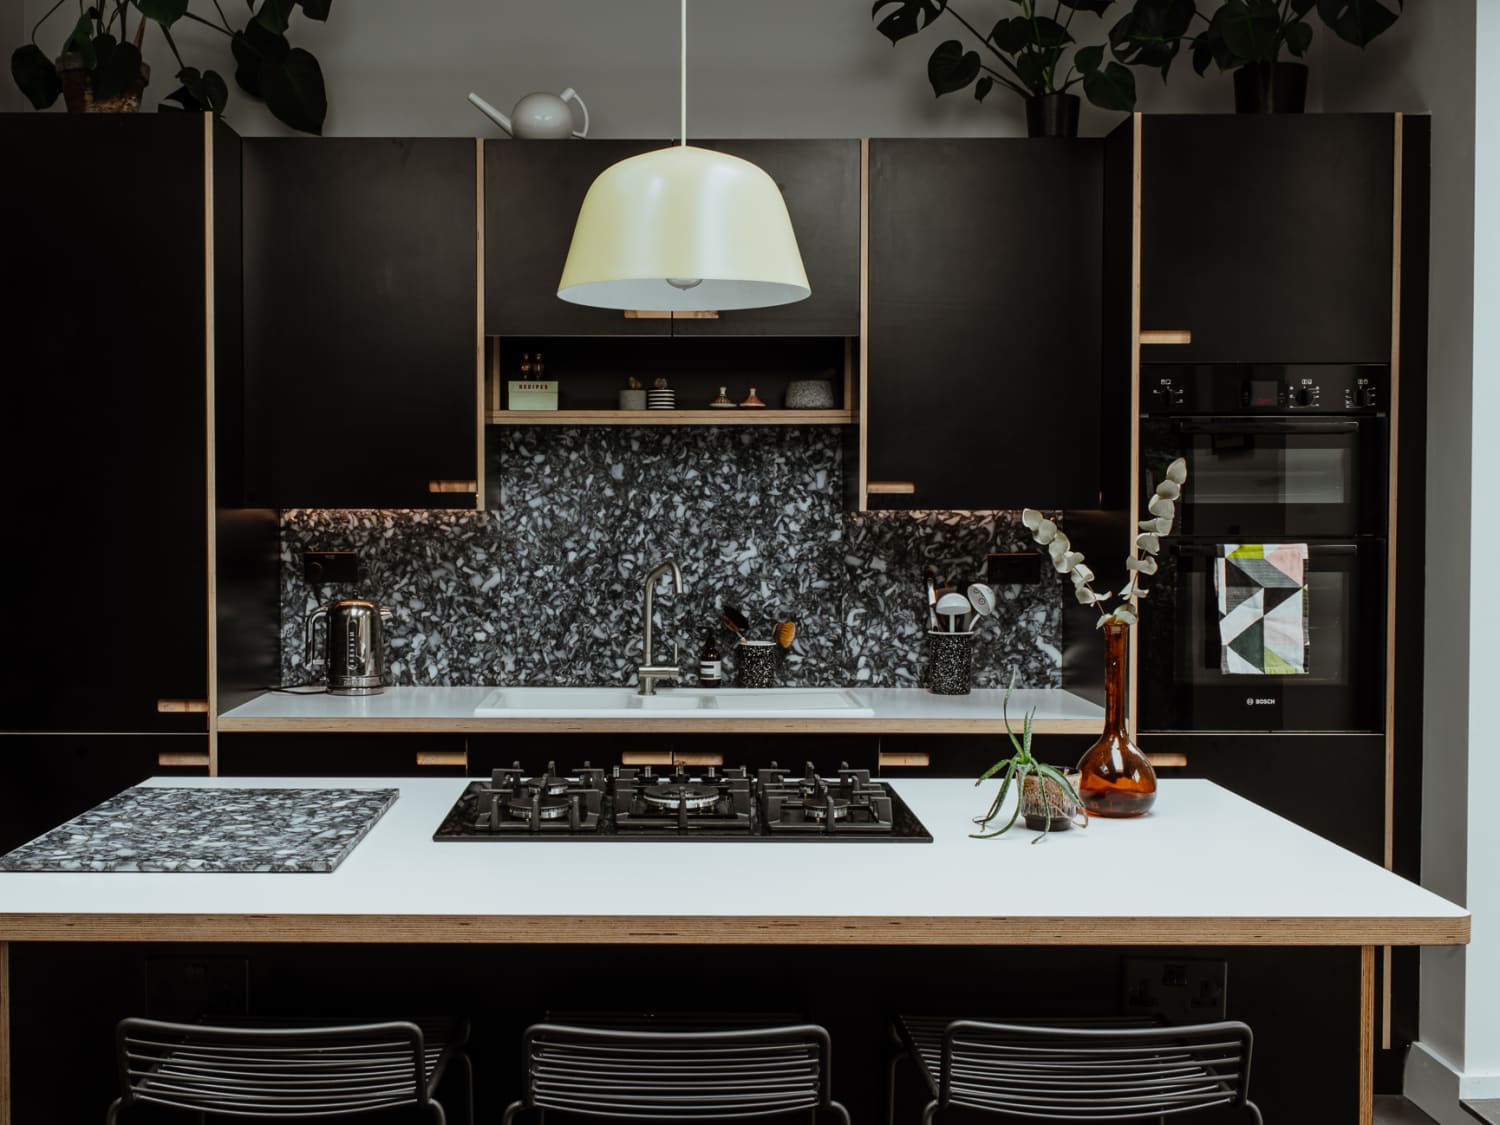 13 Stylish Modern Kitchen Ideas - Contemporary Kitchen Remodels